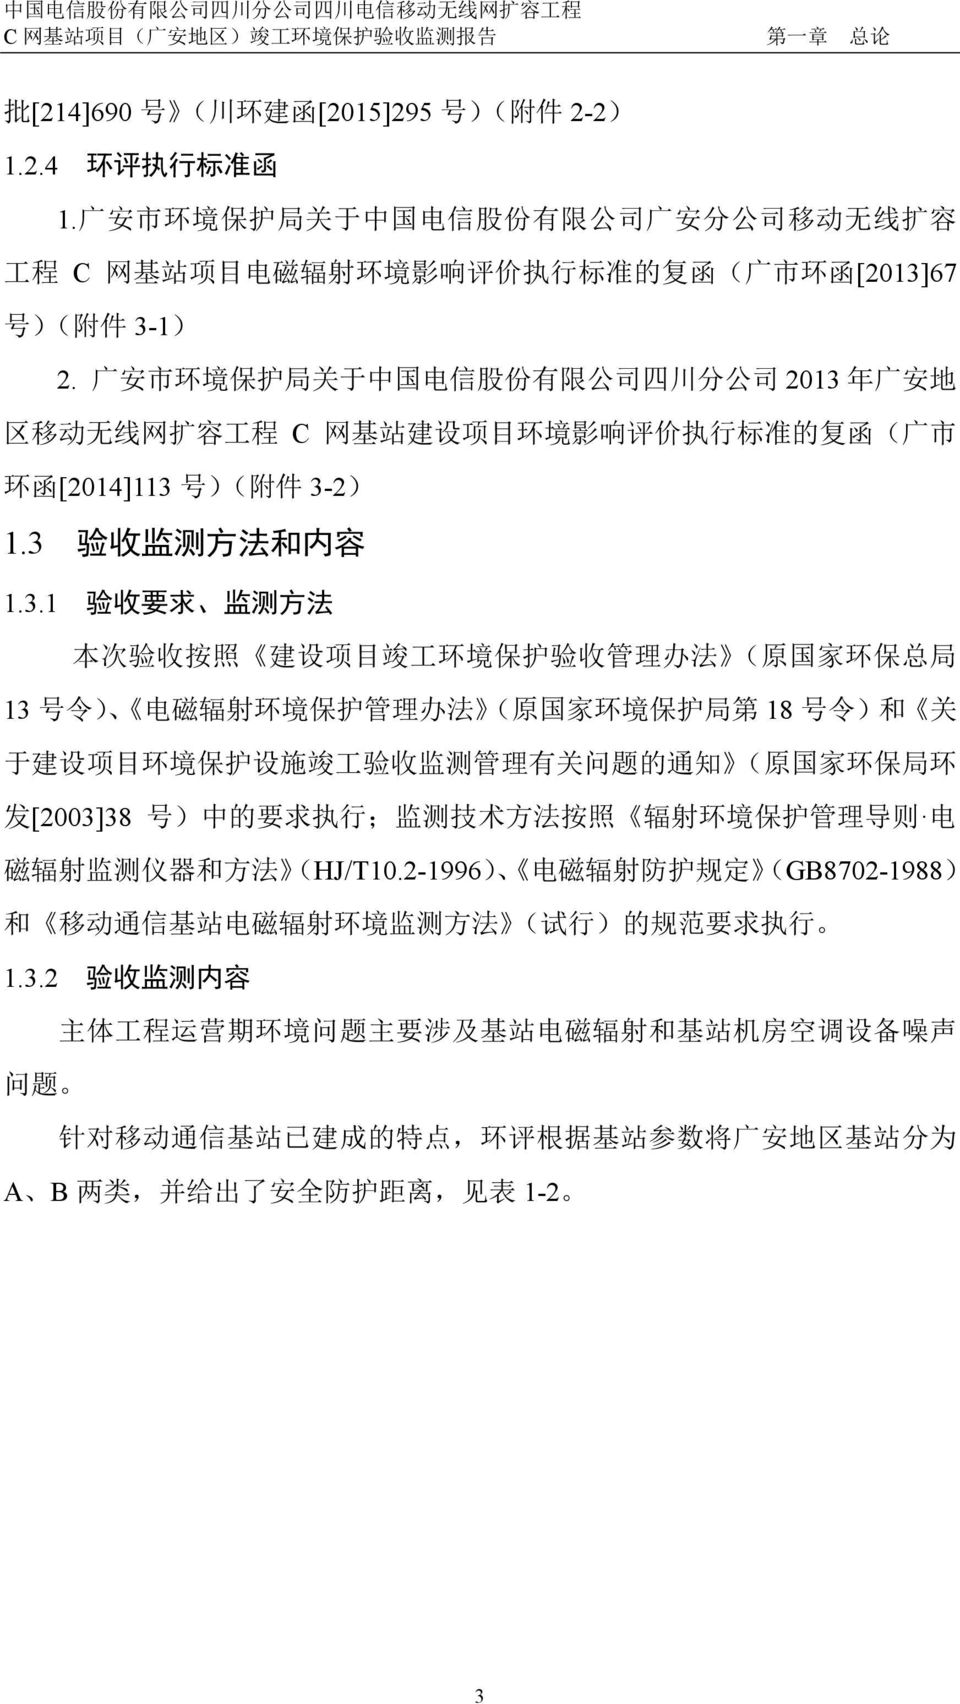 广 安 市 环 境 保 护 局 关 于 中 国 电 信 股 份 有 限 公 司 四 川 分 公 司 2013 